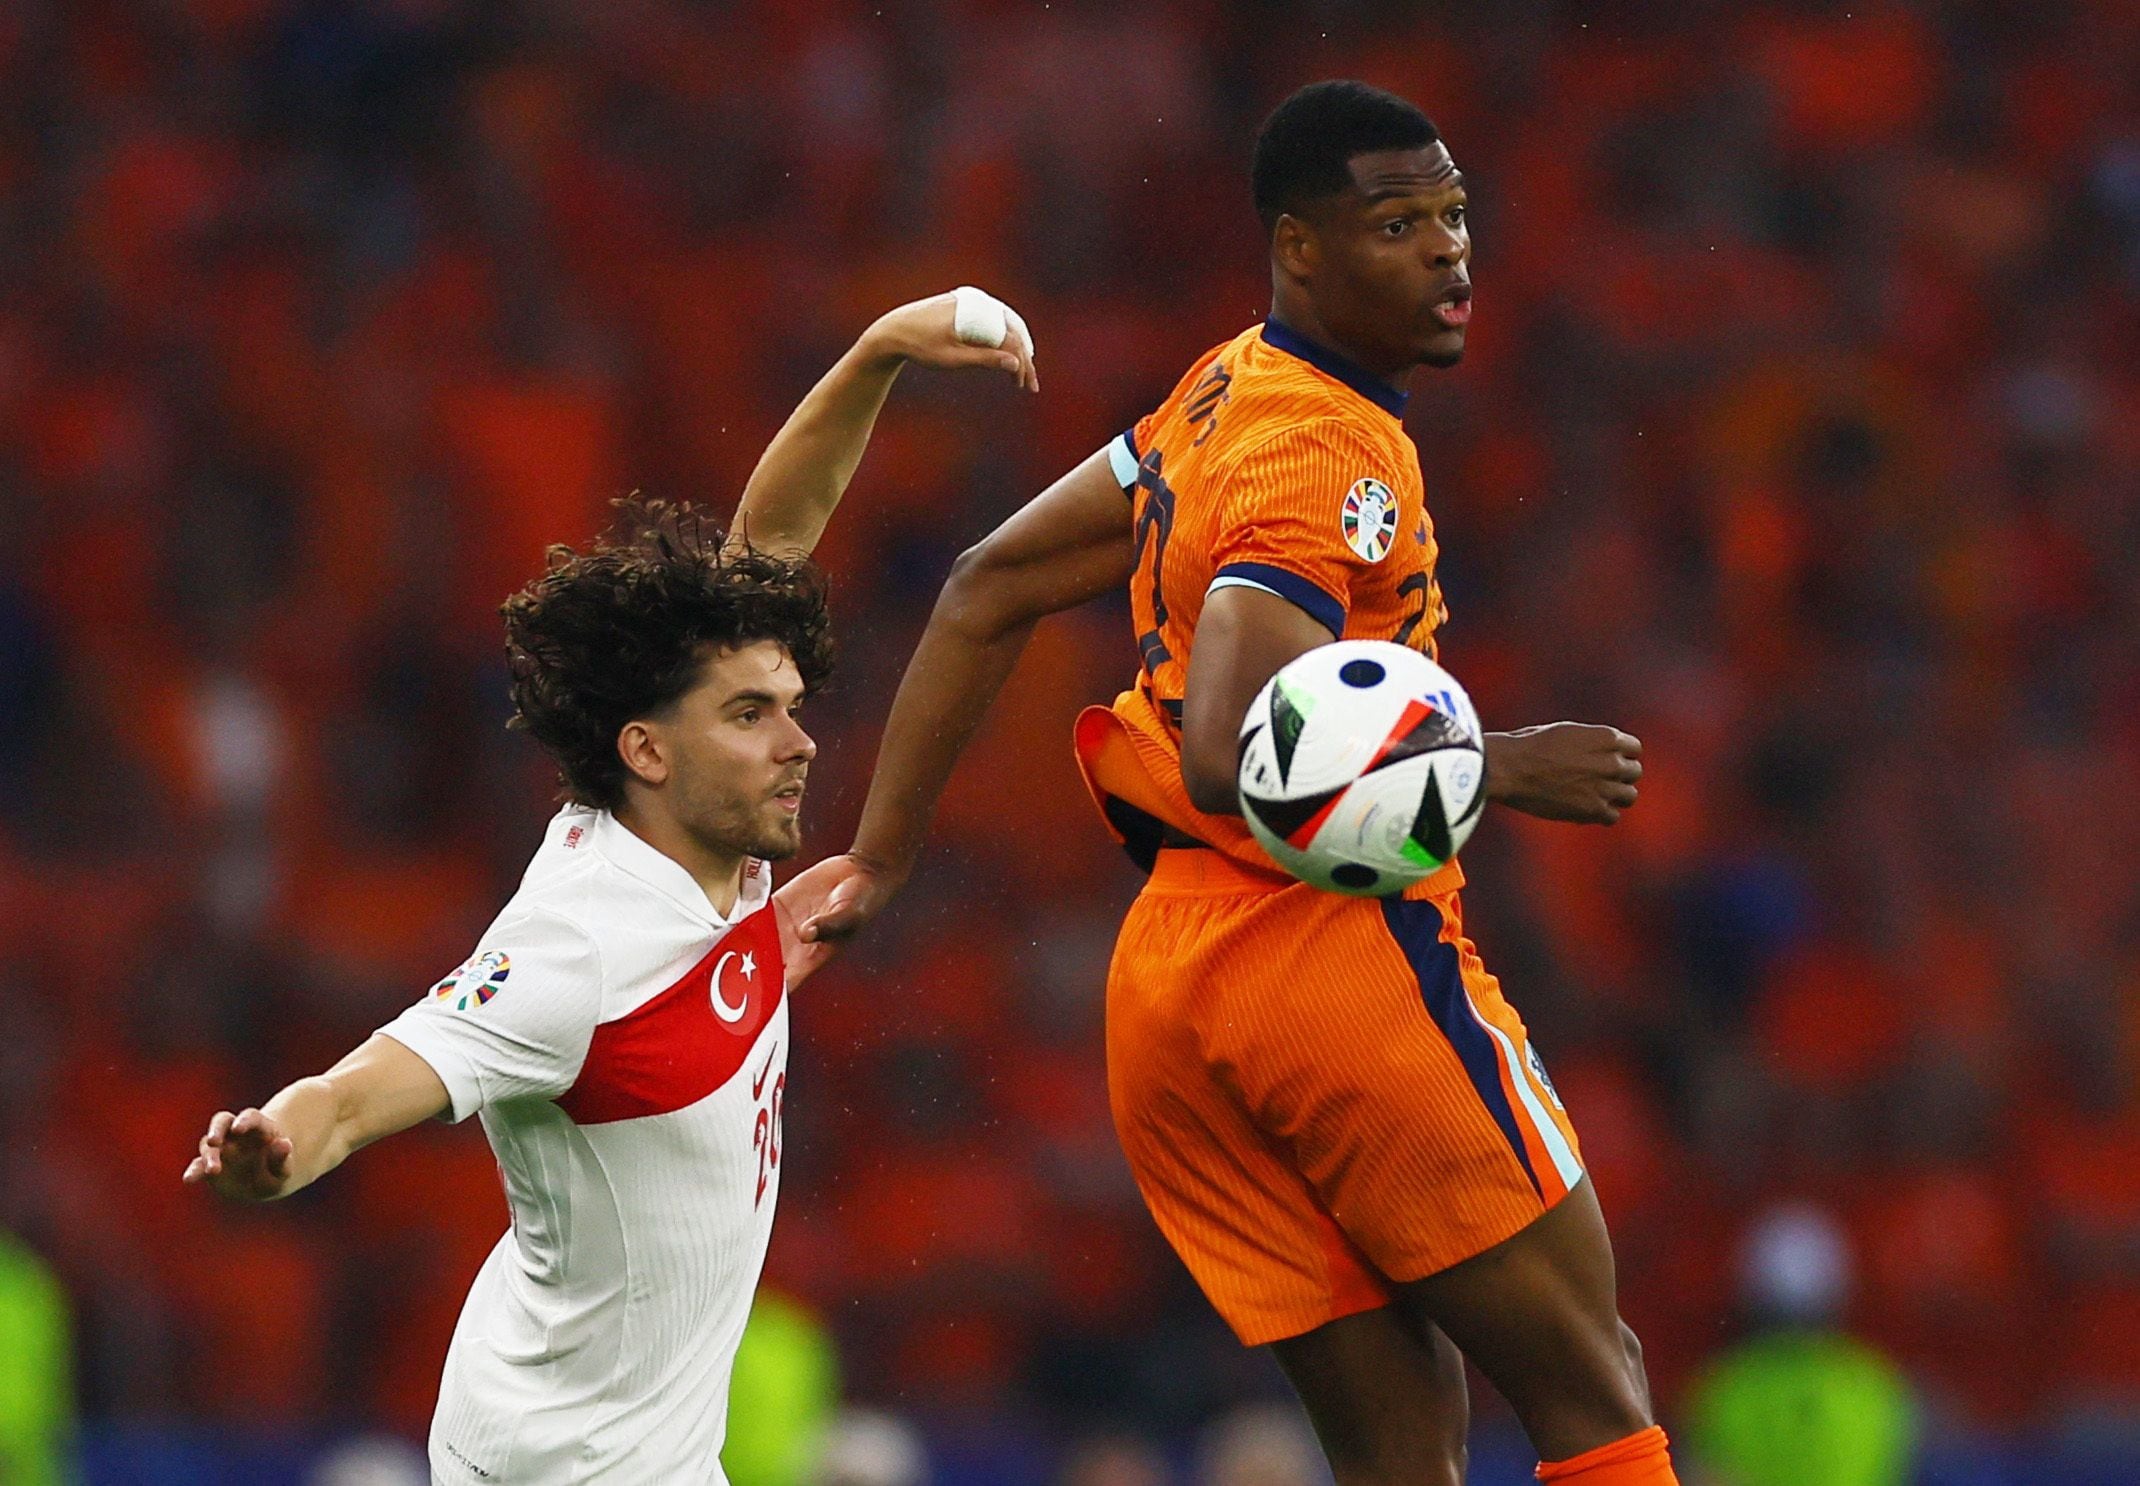 Países Bajos – Turquía, en directo | La selección neerlandesa domina pero le cuesta crear ocasiones de gol ante el combinado turco